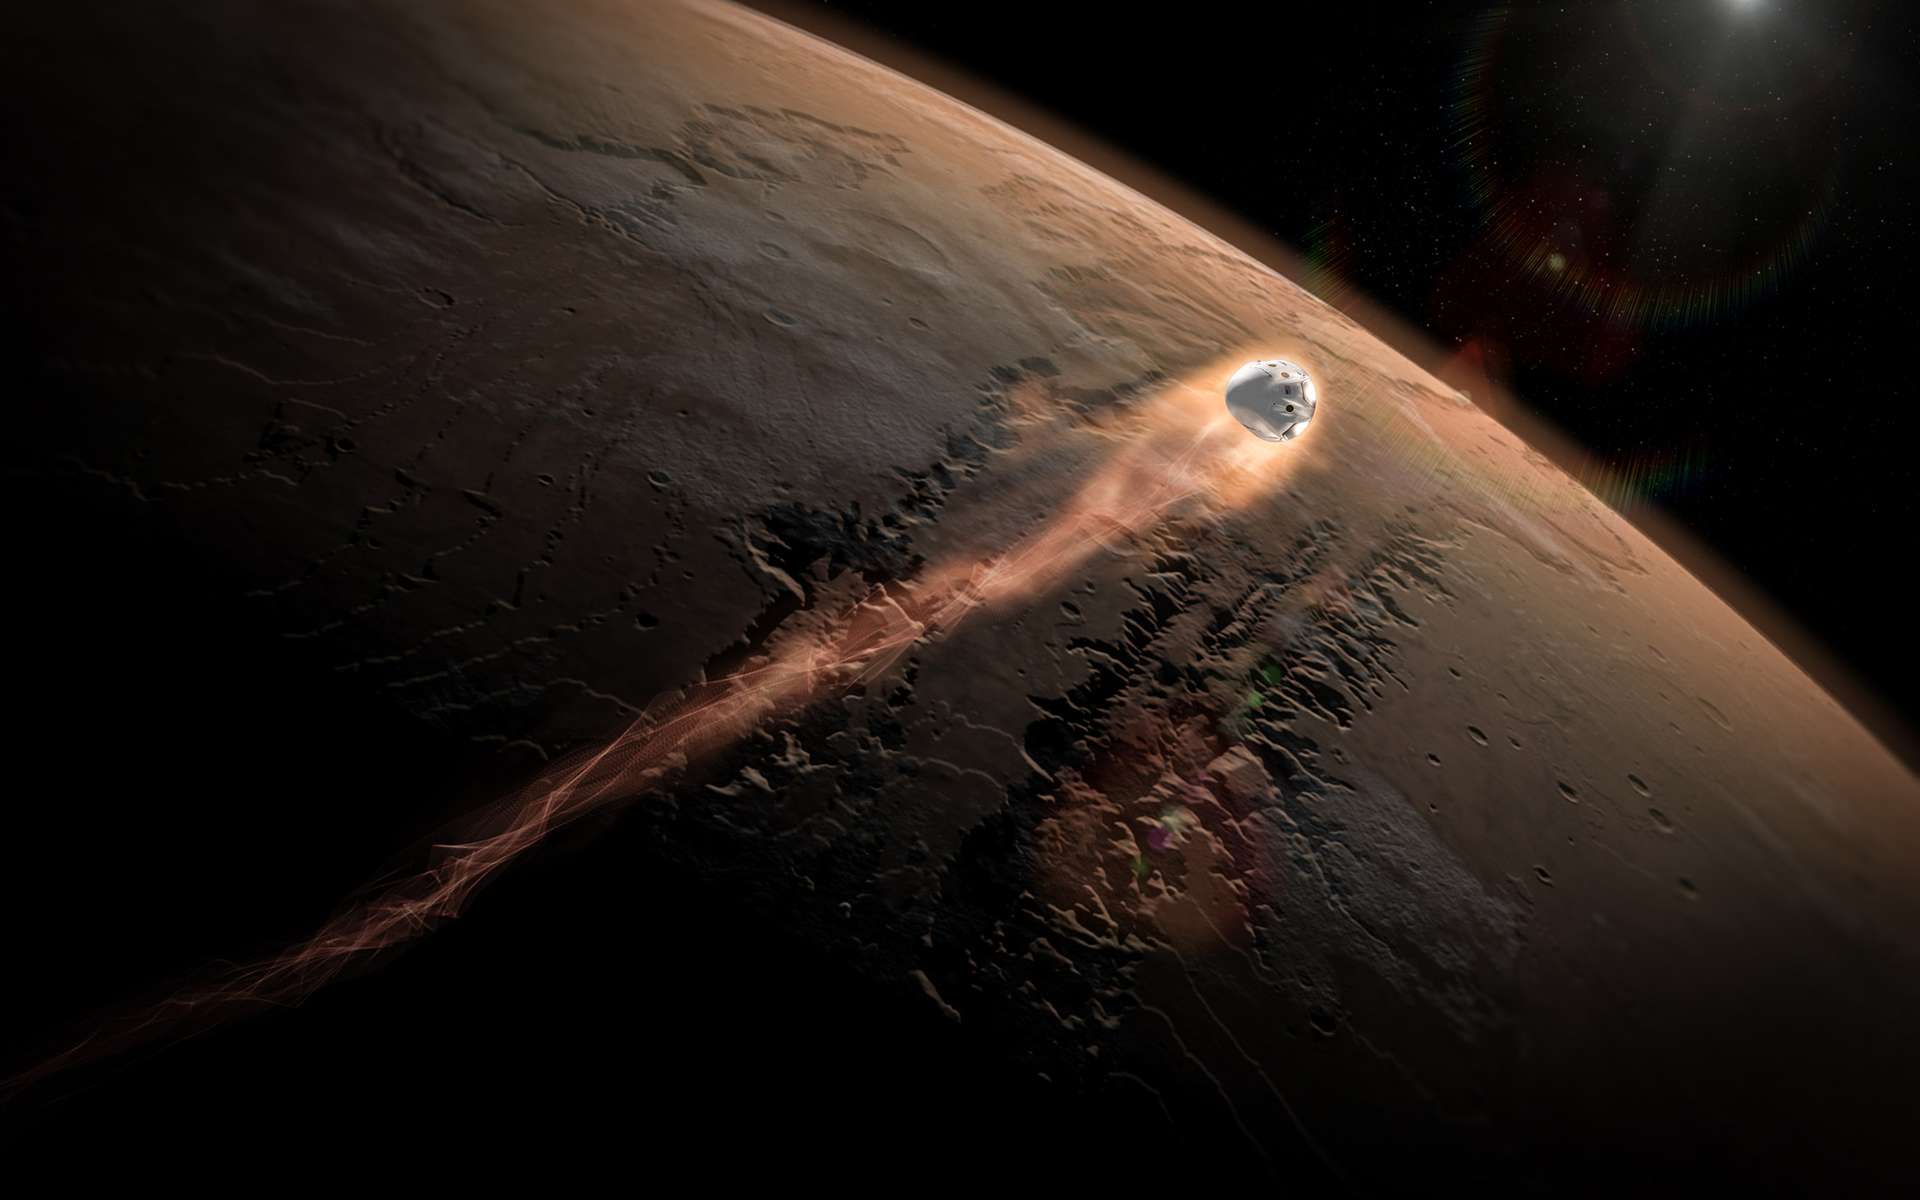 Pour atterrir sur Mars, la capsule Red Dragon utilisera une technique semblable à celle mise en œuvre pour récupérer les étages principaux des lanceurs Falcon 9 de SpaceX et que la Nasa souhaite utiliser pour ses futures missions habitées martiennes. C'est ce qui justifie en partie son intérêt pour la Red Dragon. © SpaceX